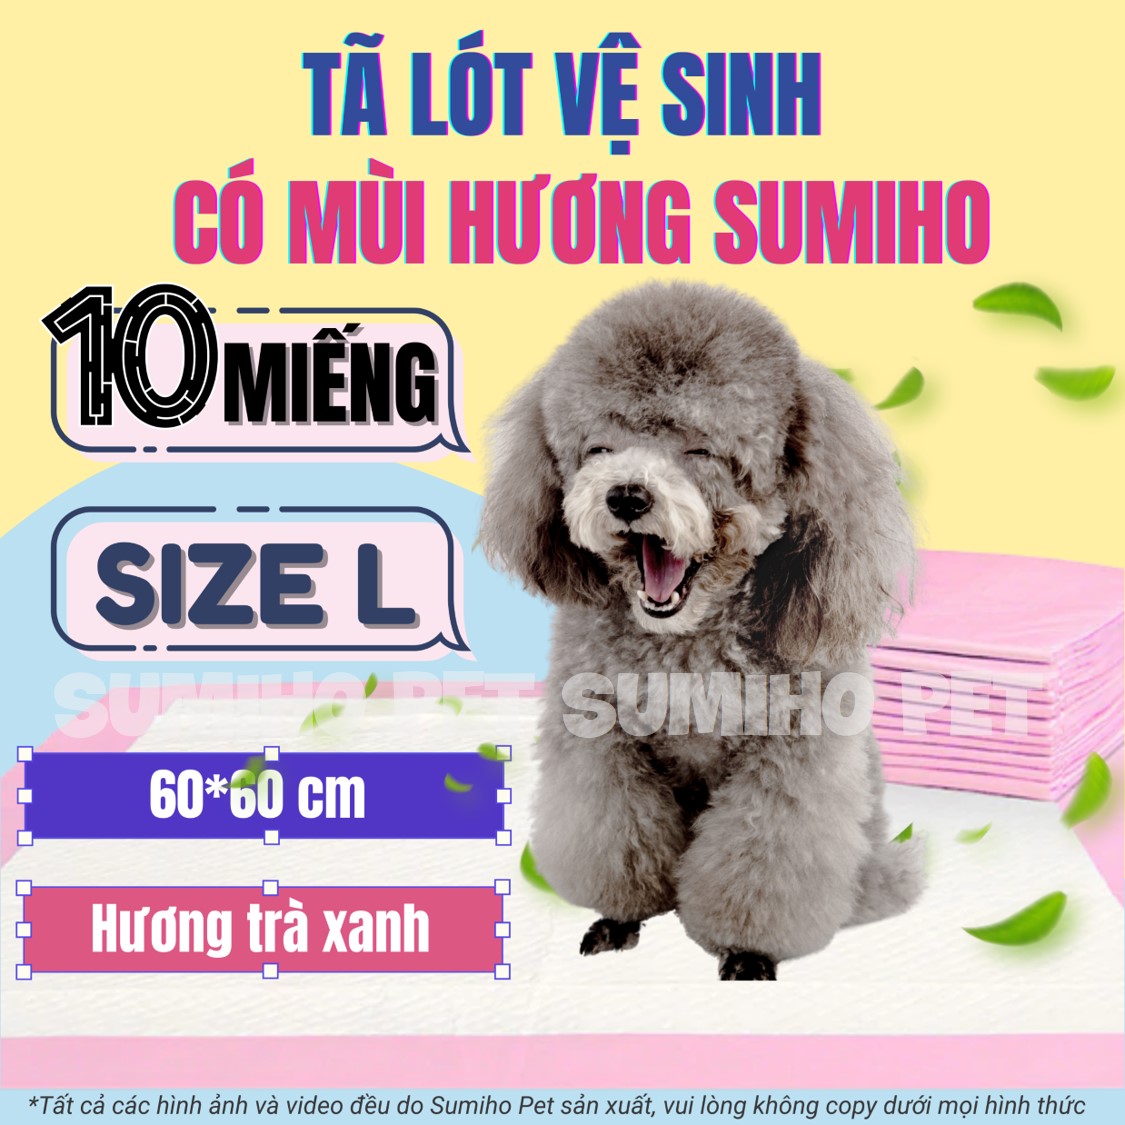 10 miếng tã lót vệ sinh cho chó mèo Sumiho size L 60x60cm có mùi hương hỗ